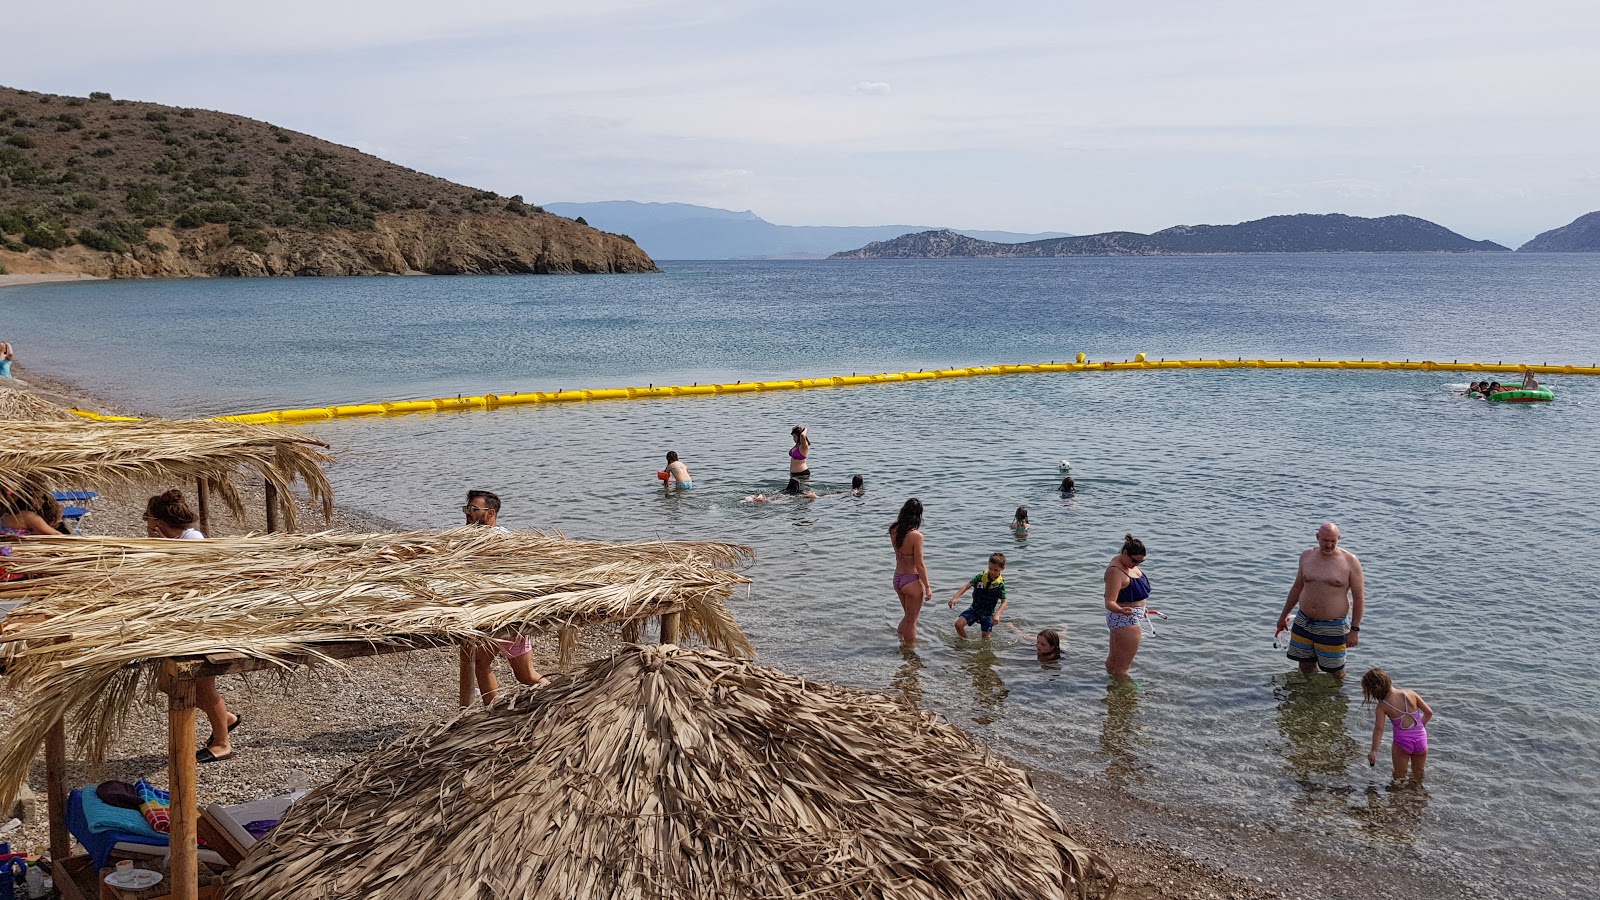 Agios Nikolaos beach'in fotoğrafı geniş ile birlikte